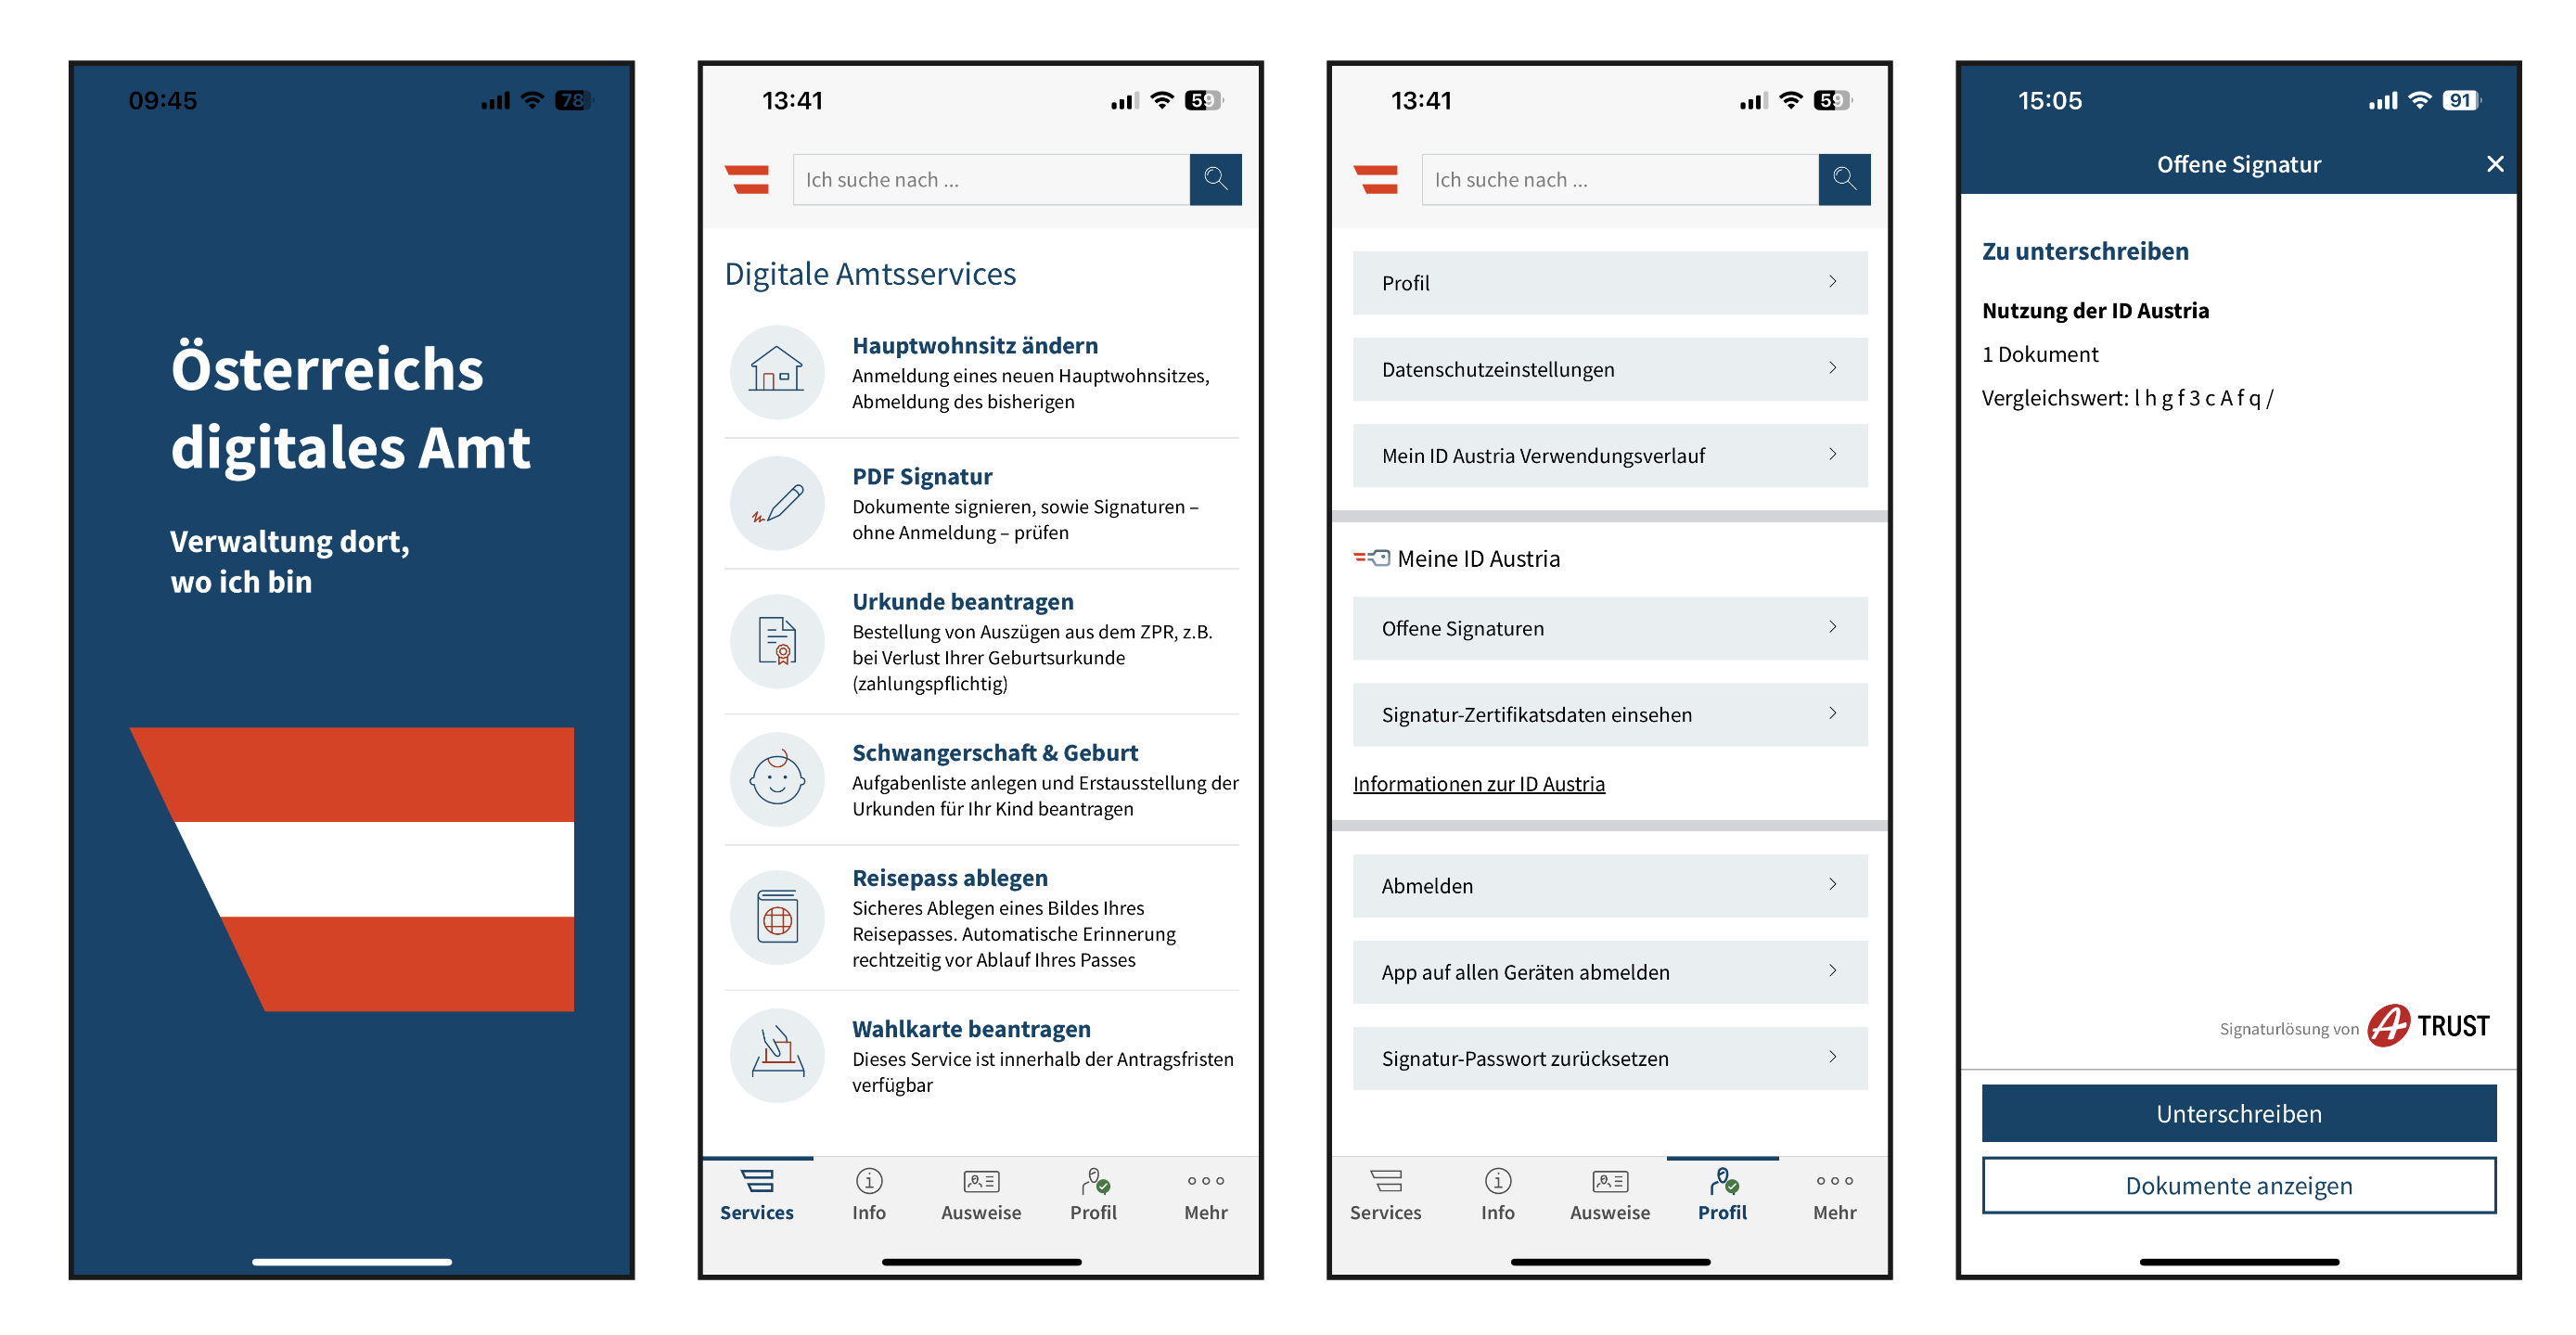 Vier Bilder vonk Smartphone-Bildschirmen mit Amtsservices und Auswahlmöglichkeiten der APP